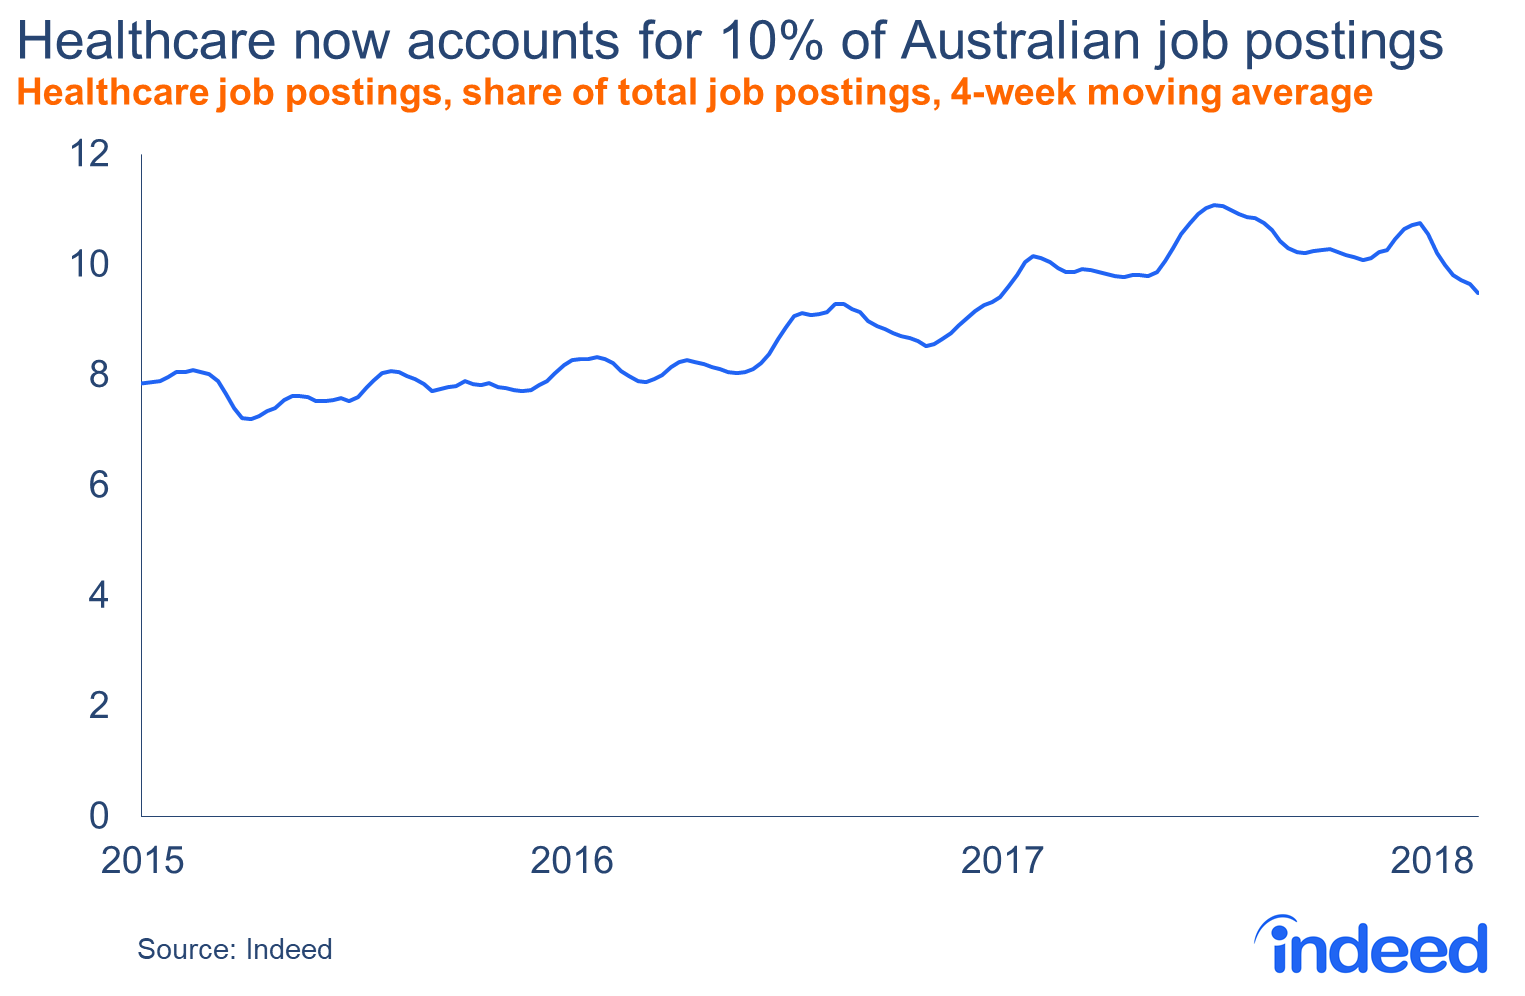 Western australia health job vacancies